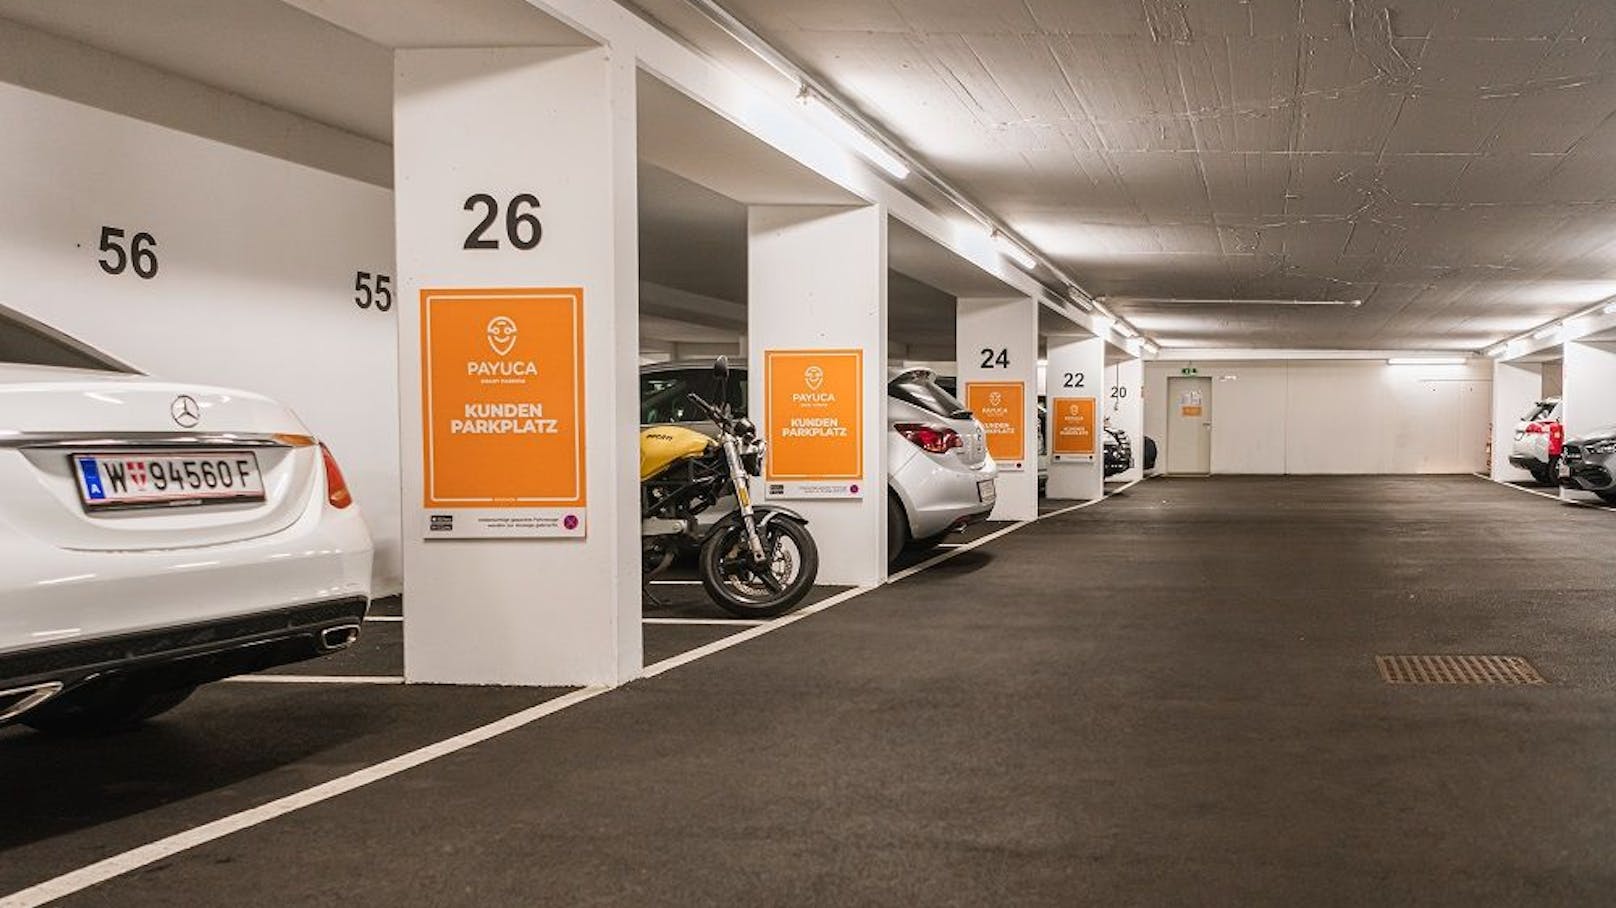 Garage mit Payuca-Kundenparkplätzen.&nbsp;